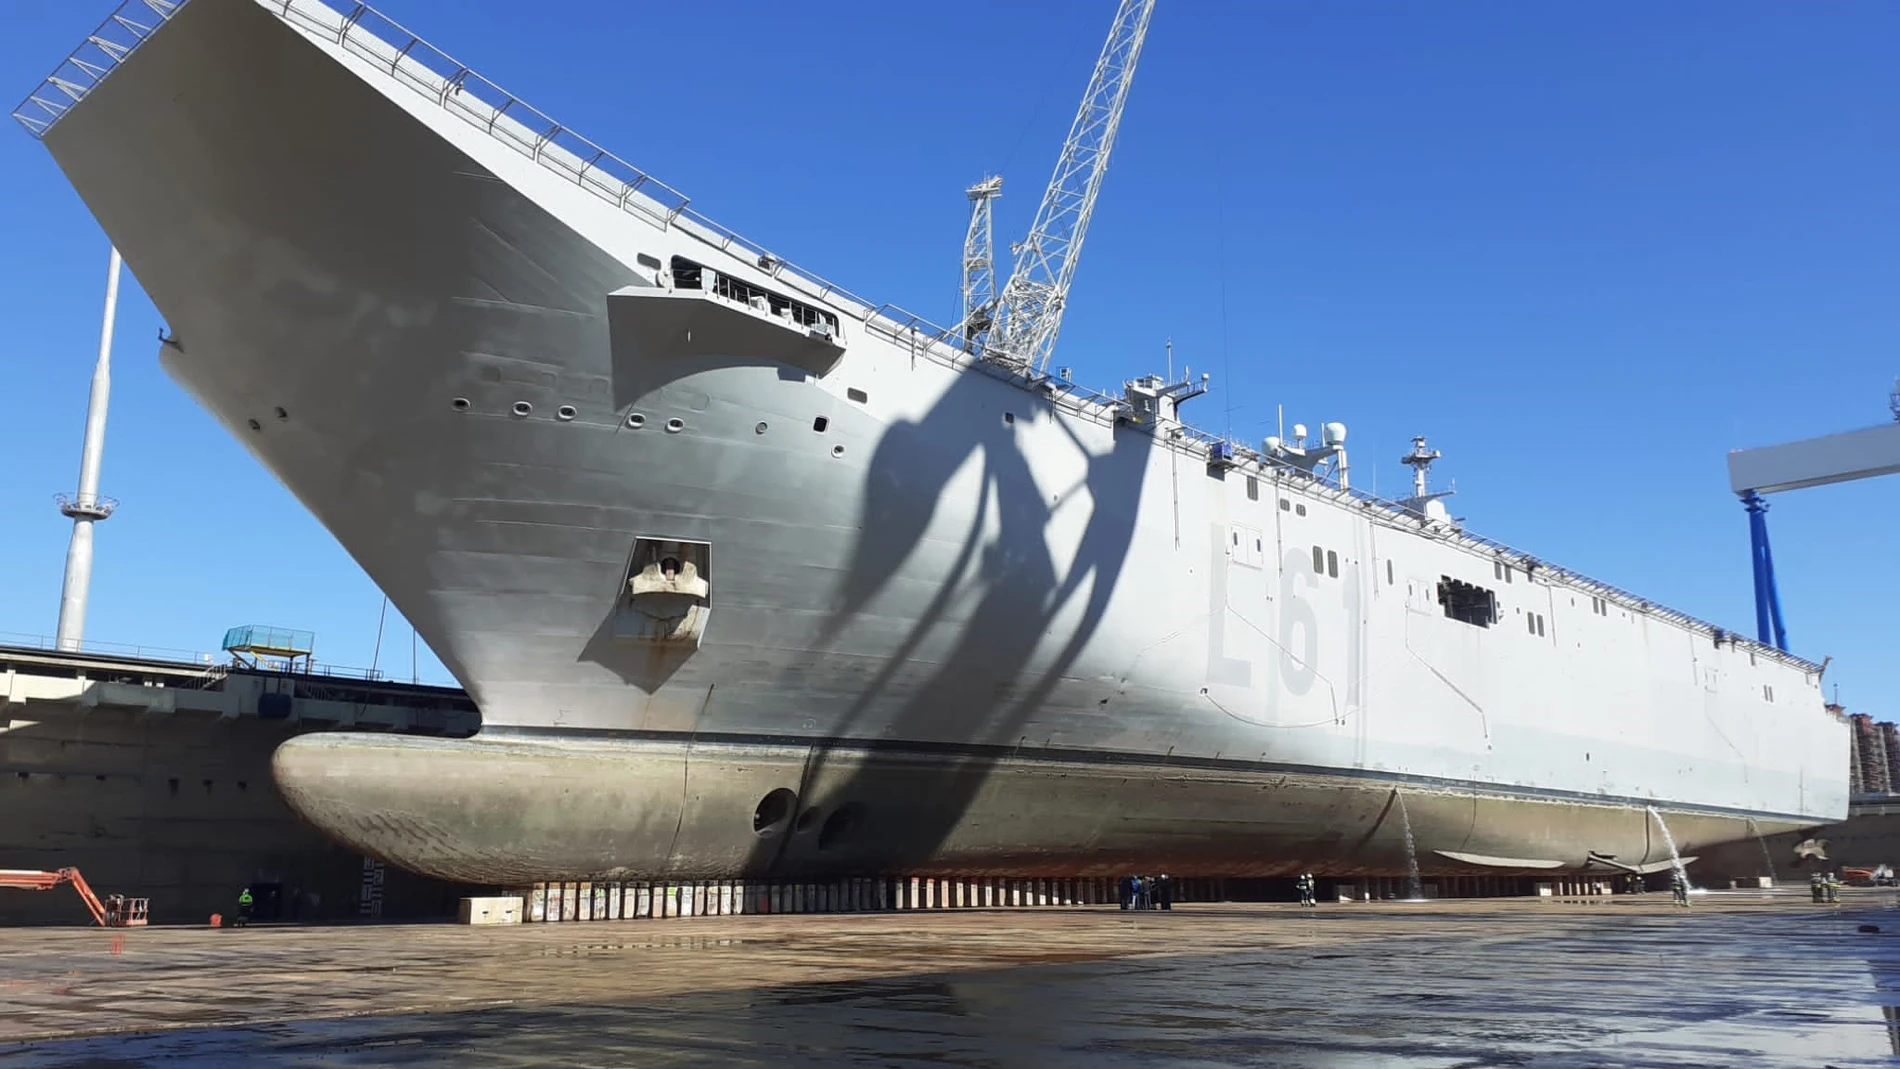 El buque "Juan Carlos I" en el dique seco de los astilleros de Puerto Real para su mantenimiento programado